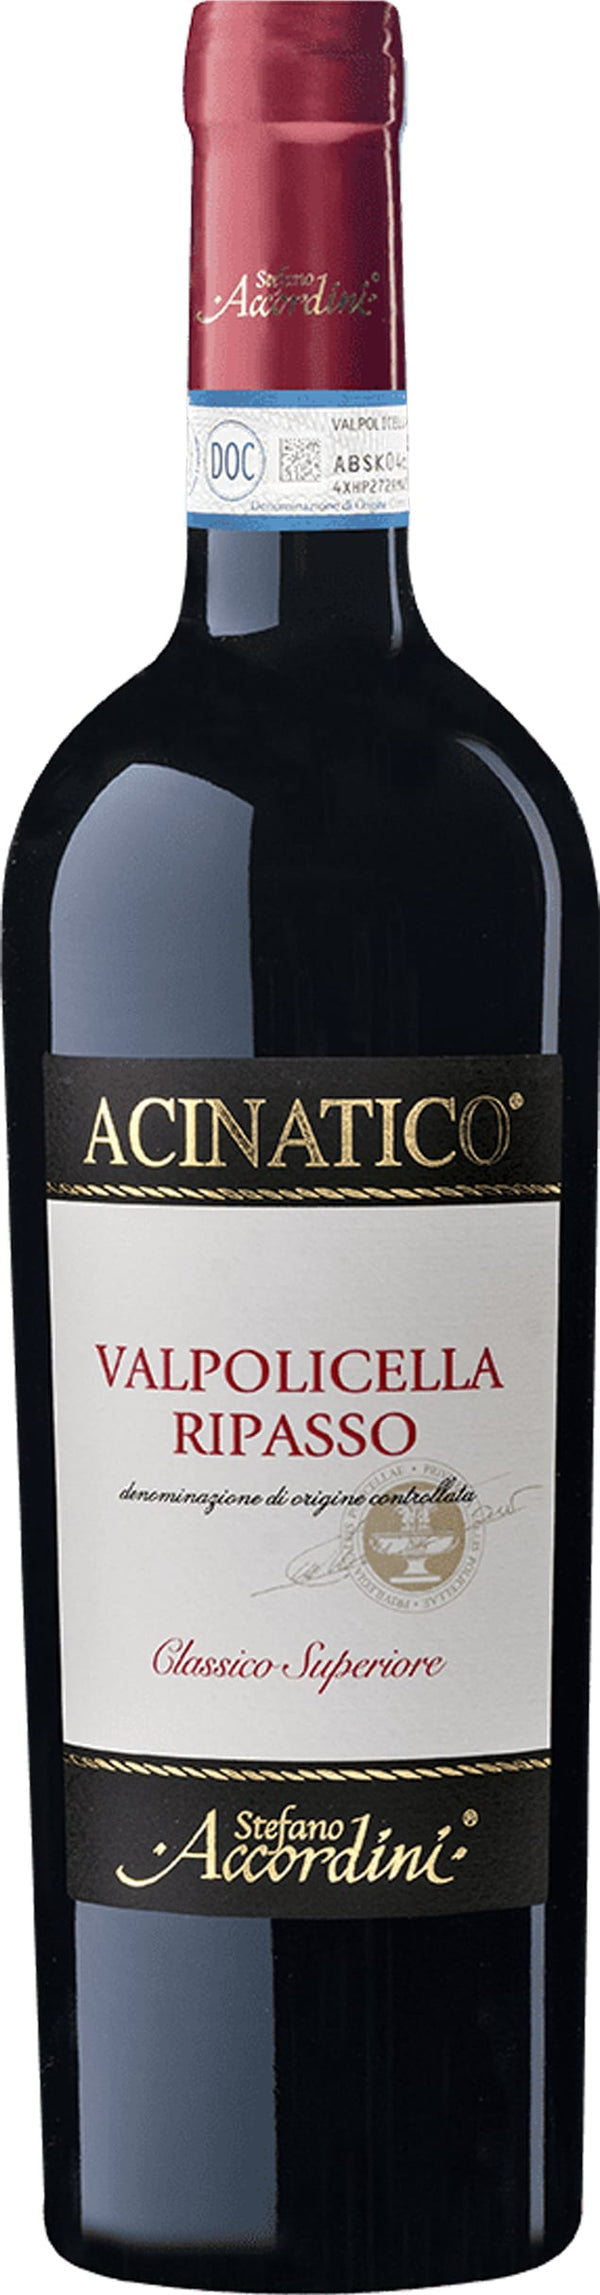 Accordini Valpolicella Classico Ripasso 2021 6x75cl - Just Wines 